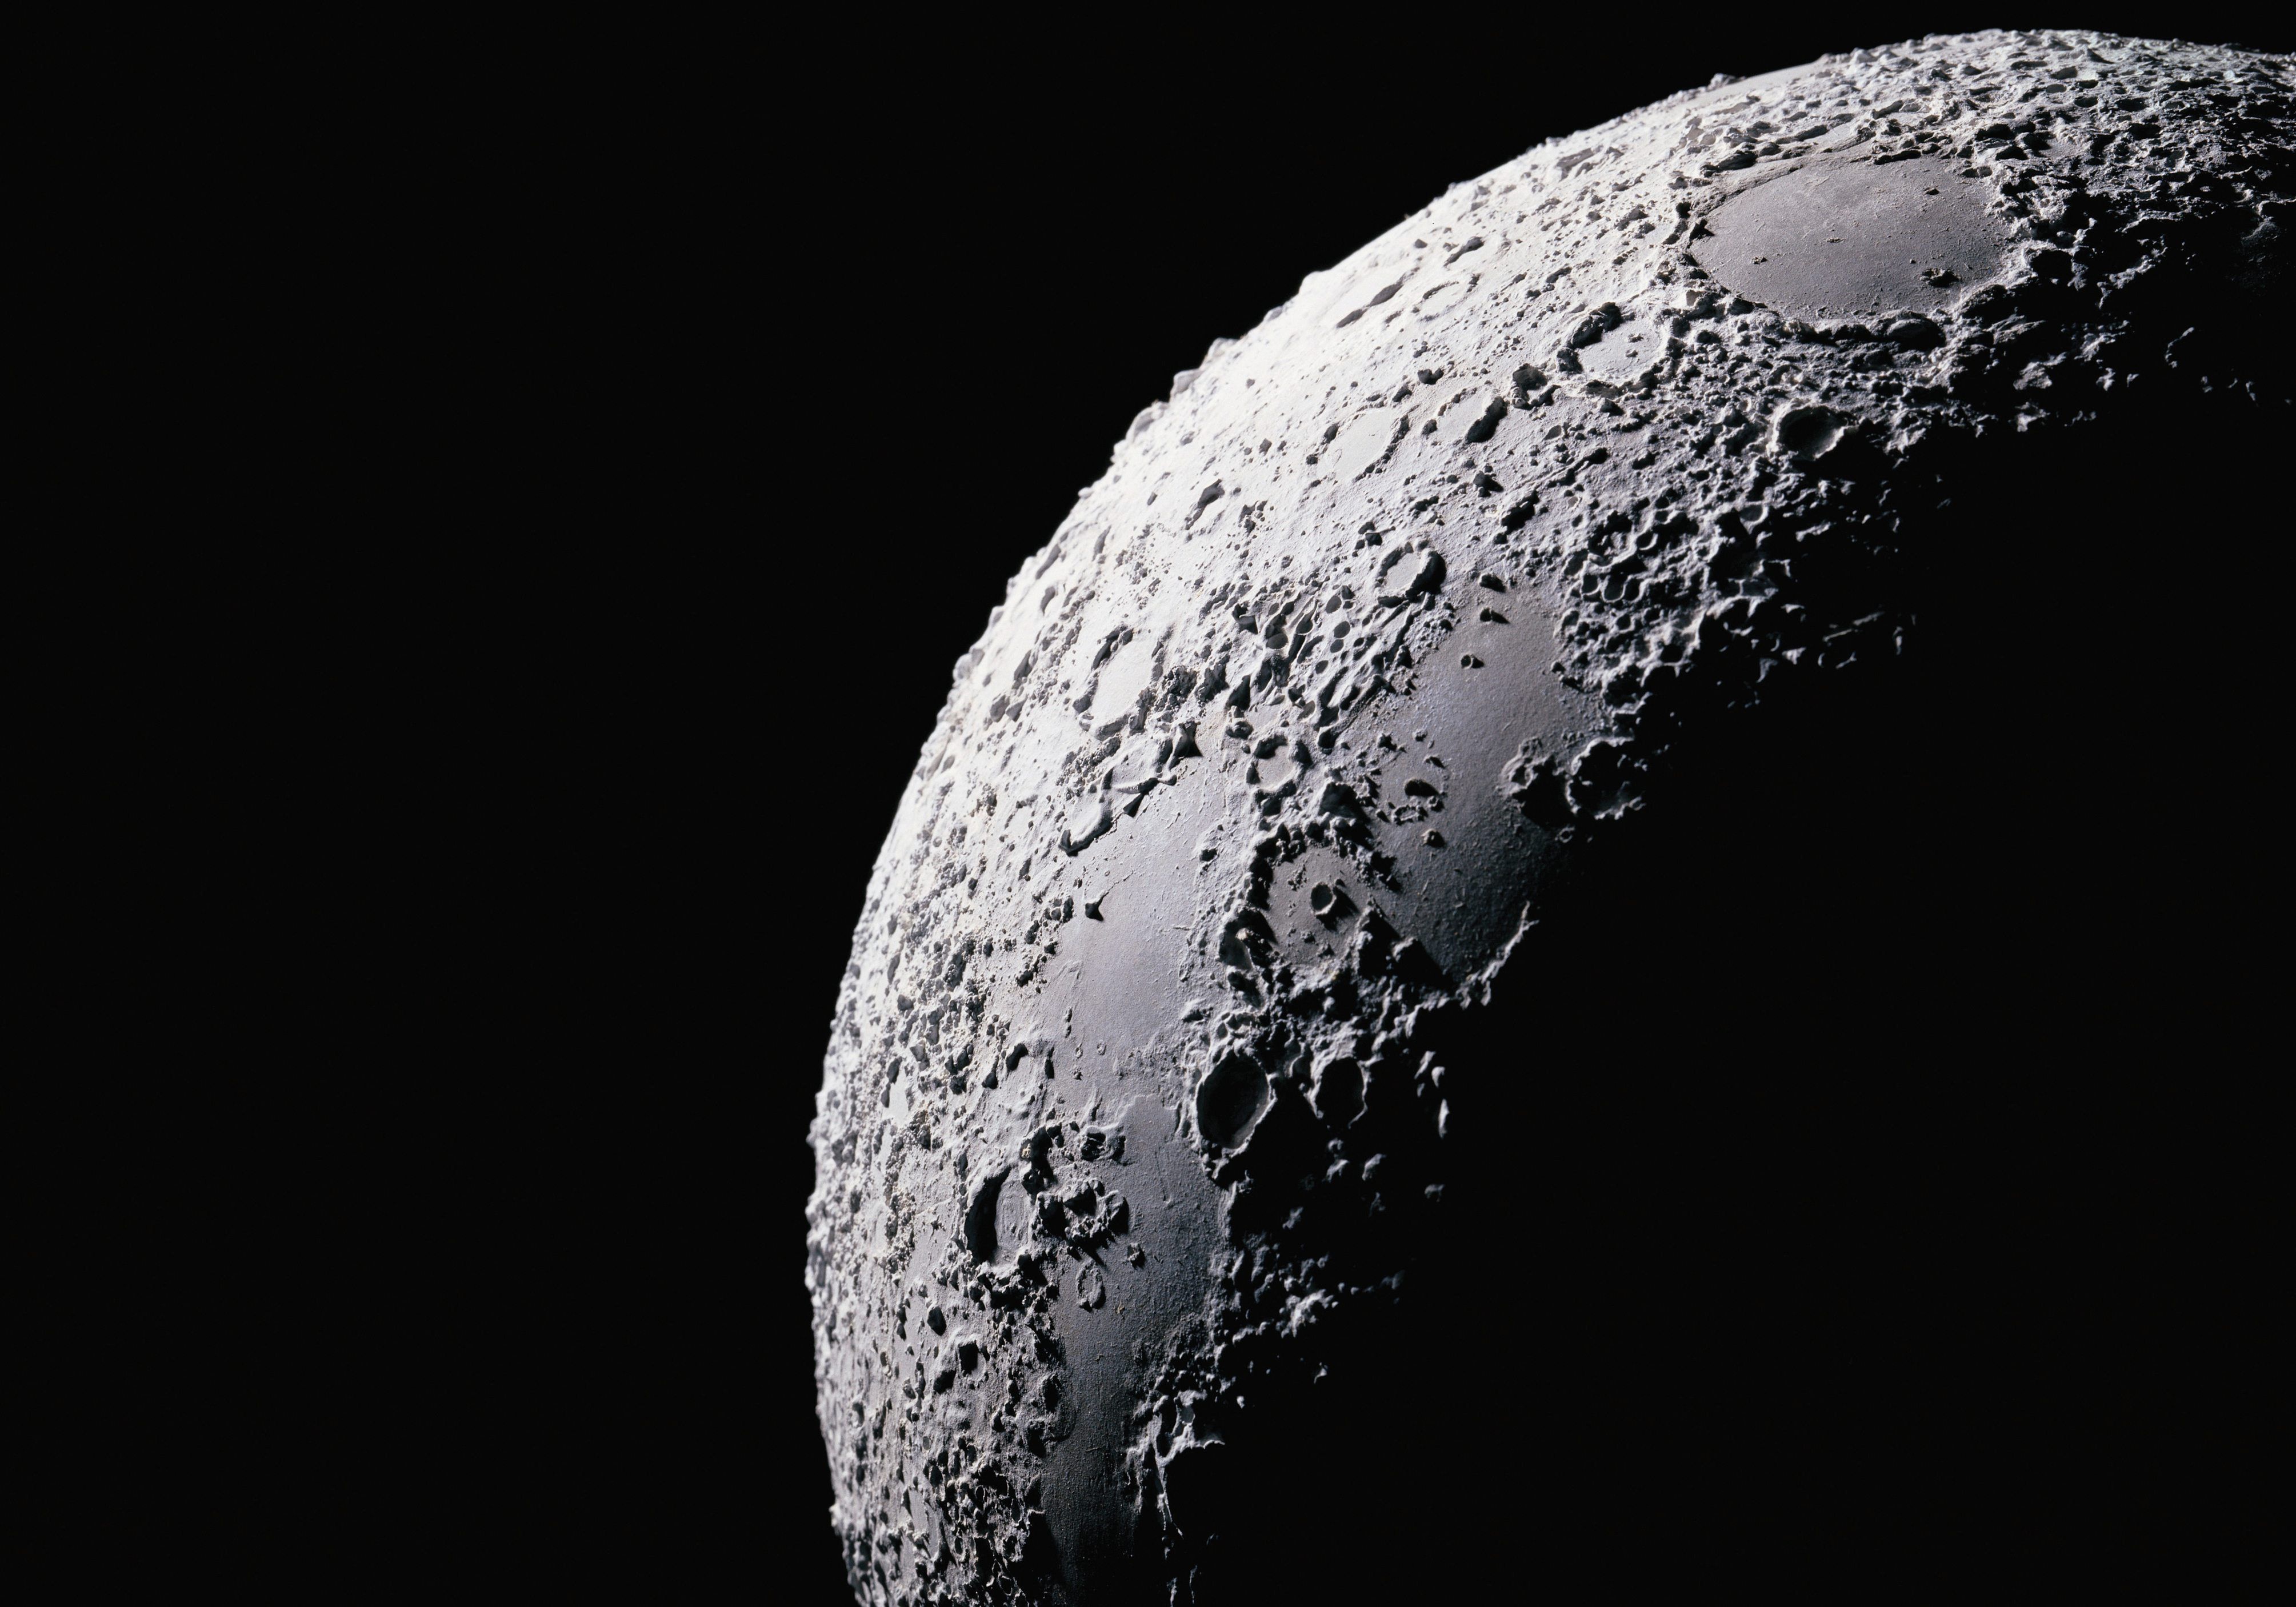 მთვარე 40 მილიონი წლით უფრო ძველი ყოფილა, ვიდრე აქამდე ვარაუდობდნენ